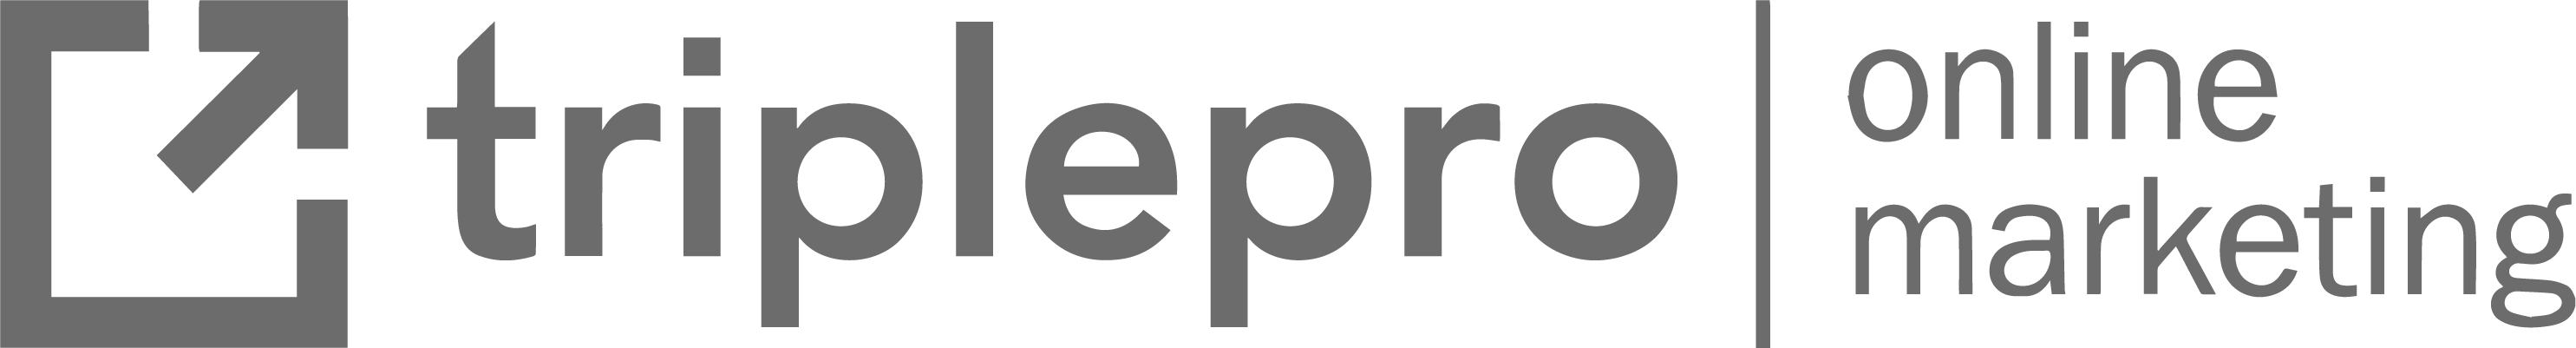 Triplepro Online Marketing logo